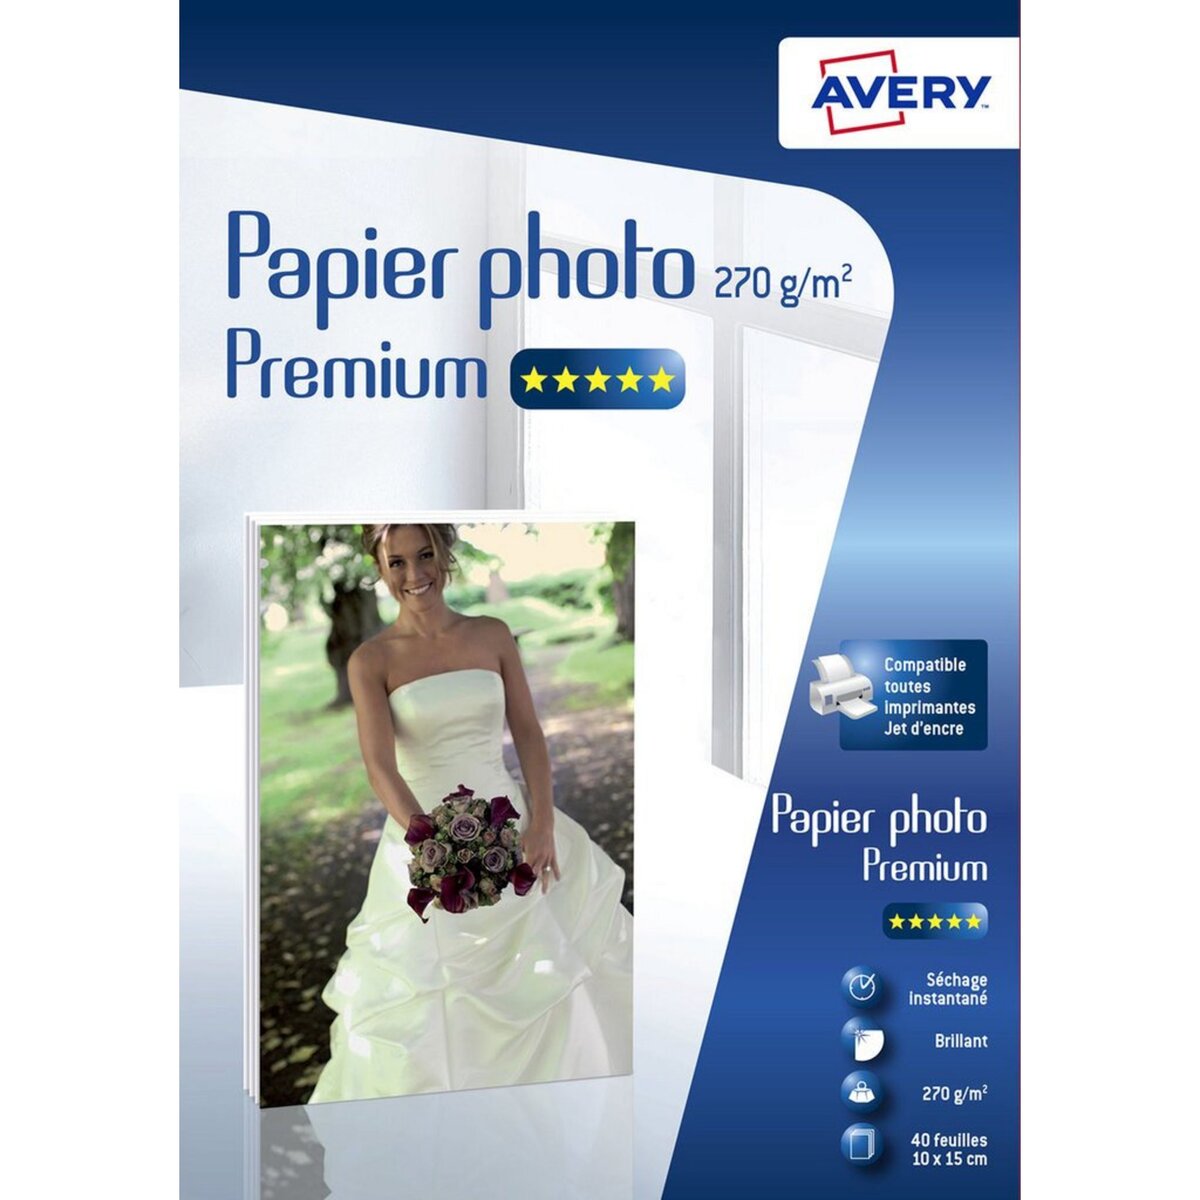 AVERY Papier photo Premium 270g/m² A6 C2453-40